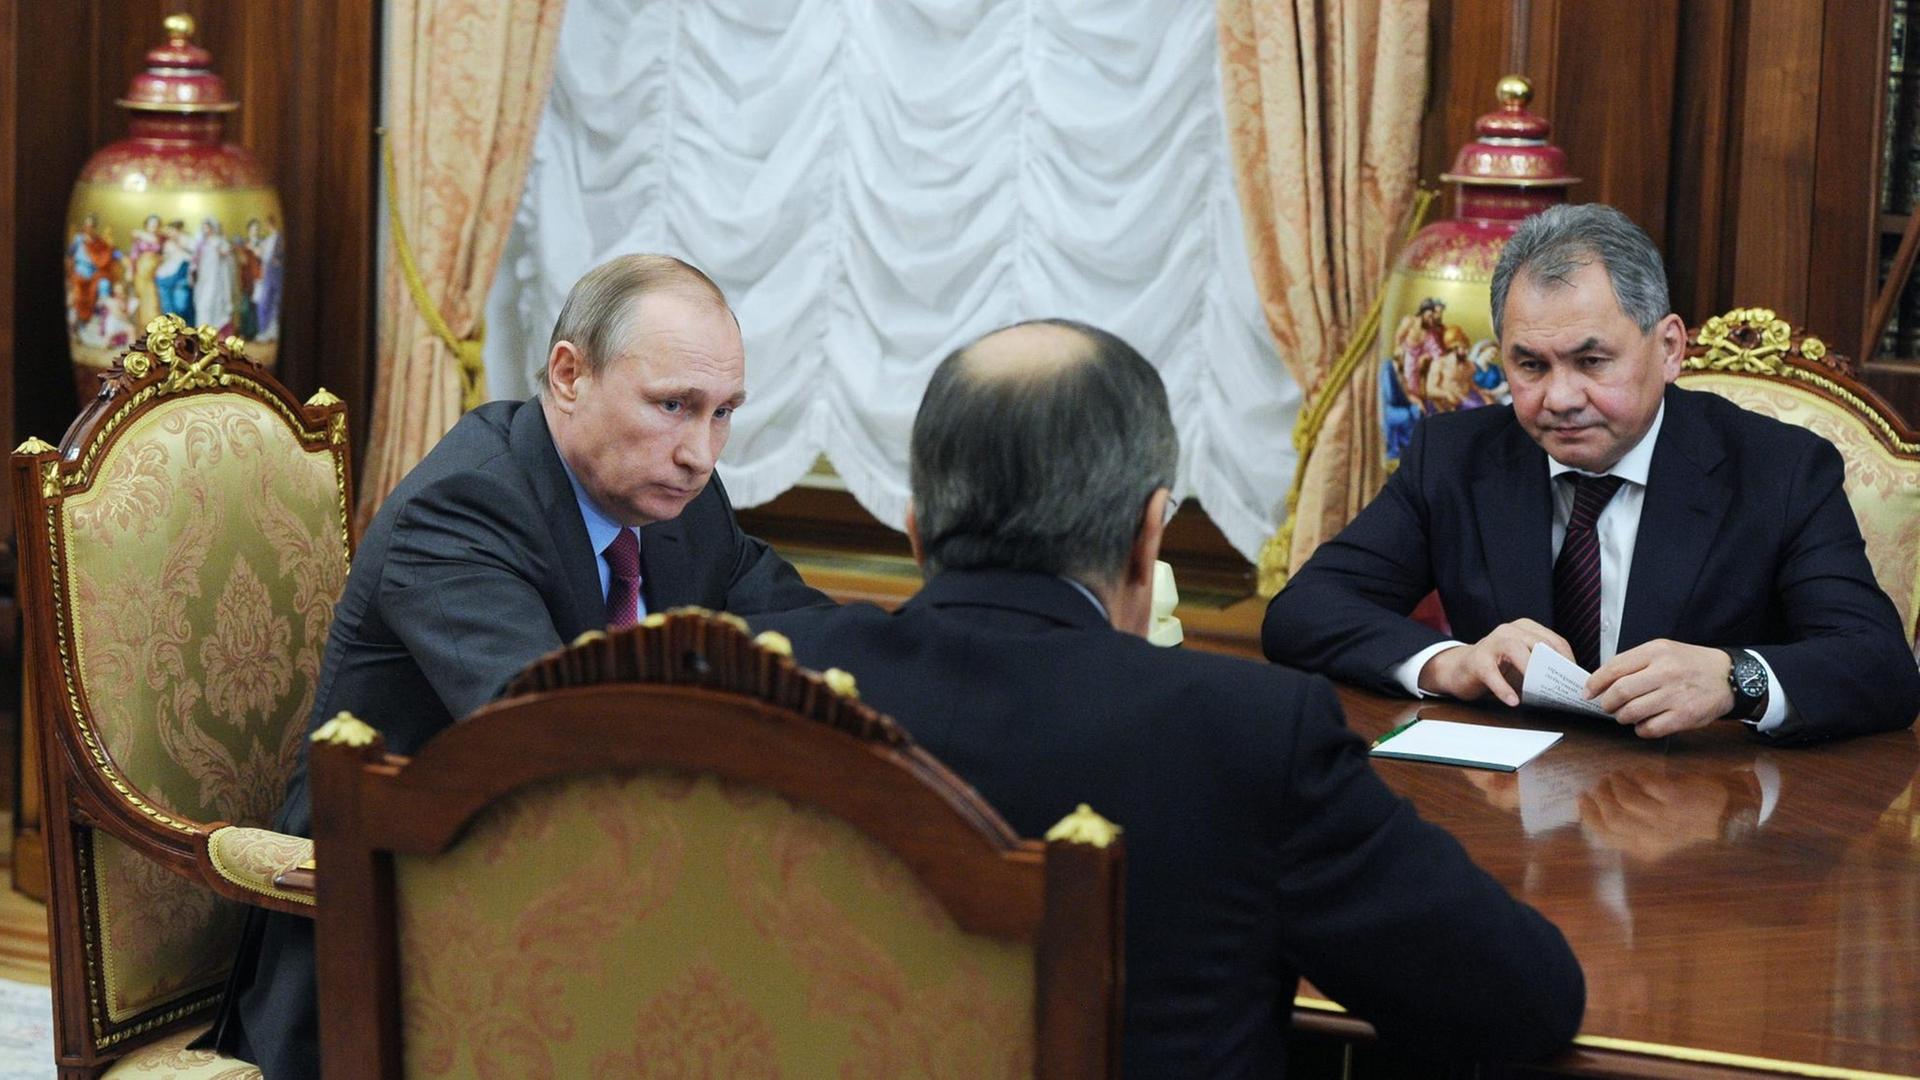 Russlands Präsident Wladimir Putin im Gespräch mit Außenminister Sergej Lawrow (m.) und Verteidigungsminister Sergej Shoygu (r.).